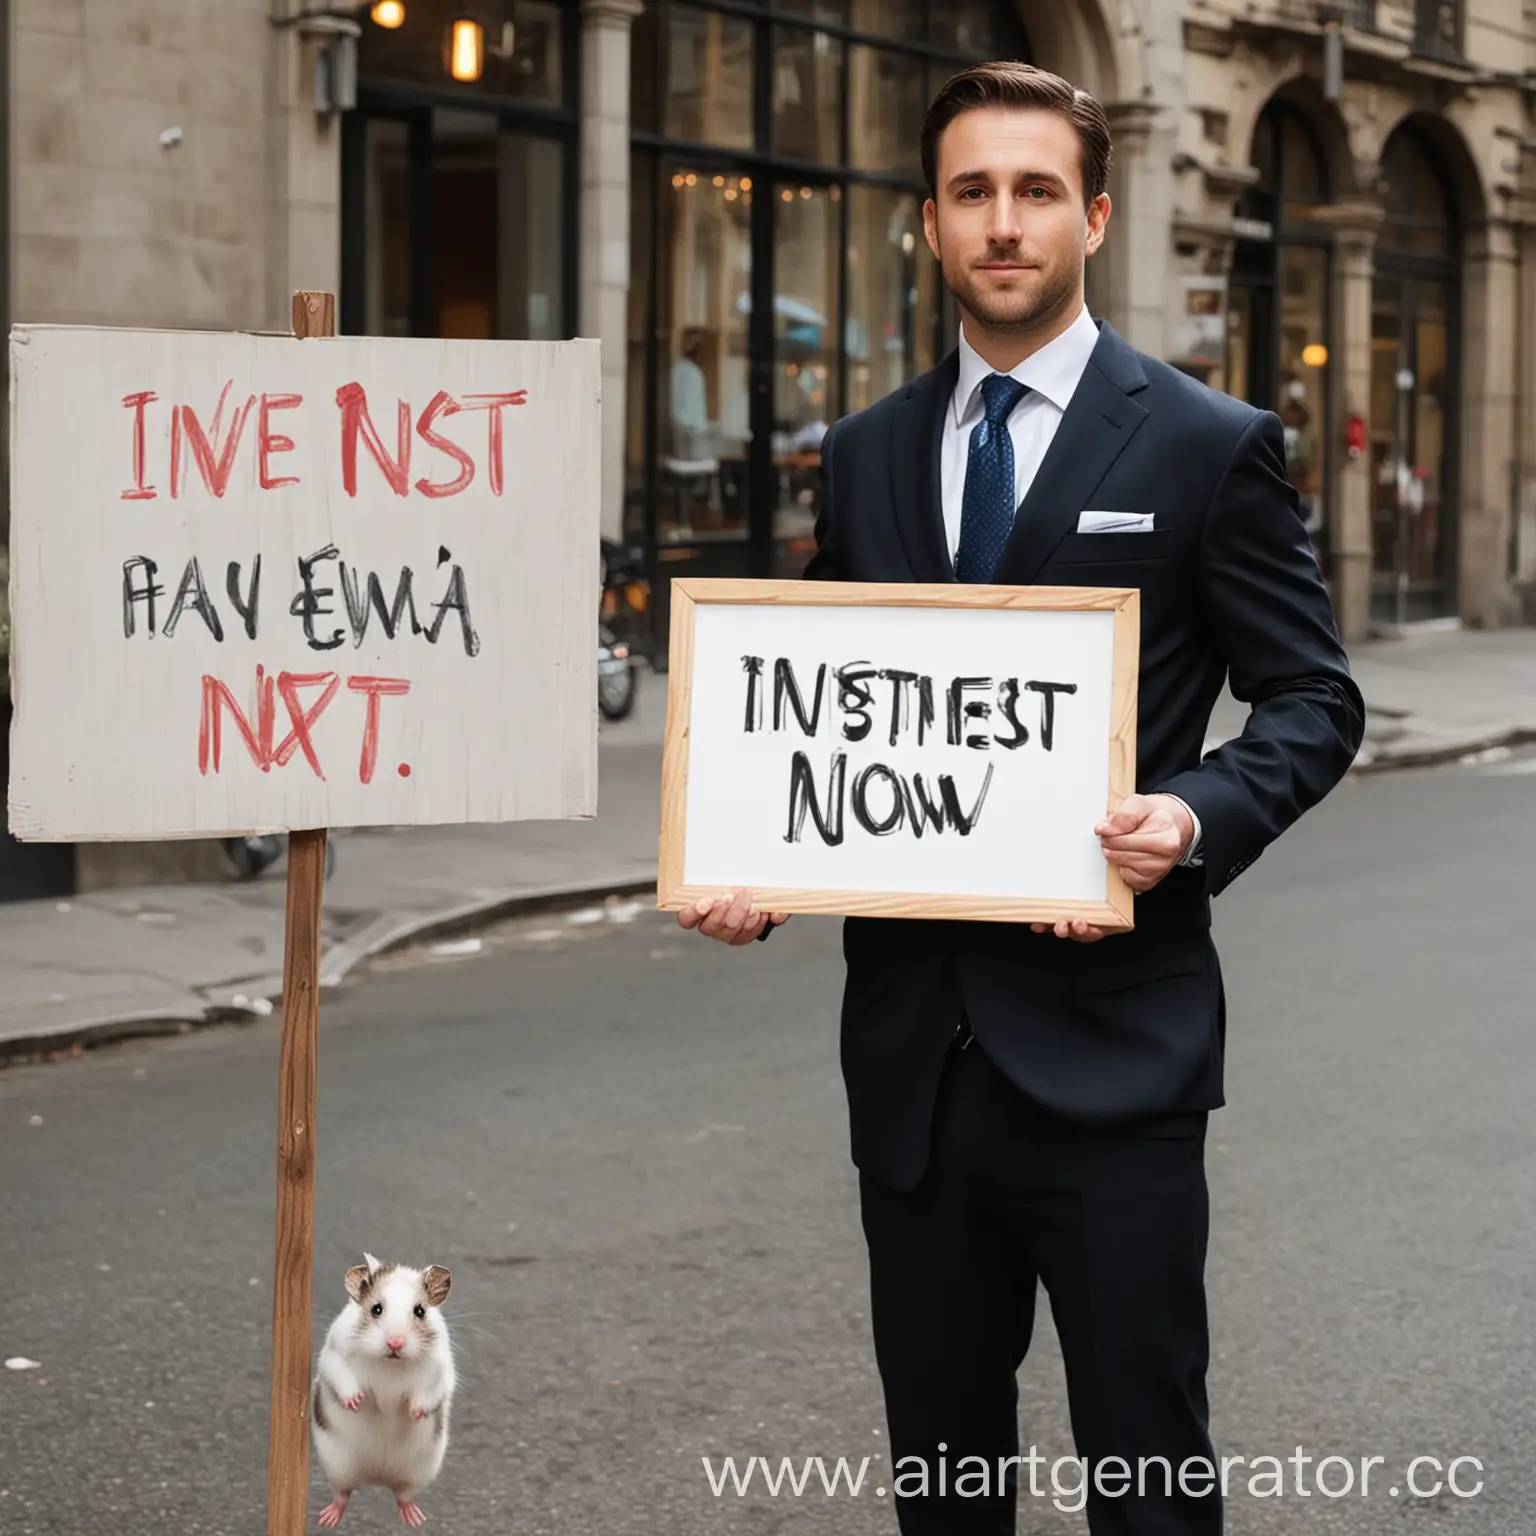 мужчина в костюме держащий в руках надпись INVEST NOW и рядом перечеркнуть надпись хомяк
